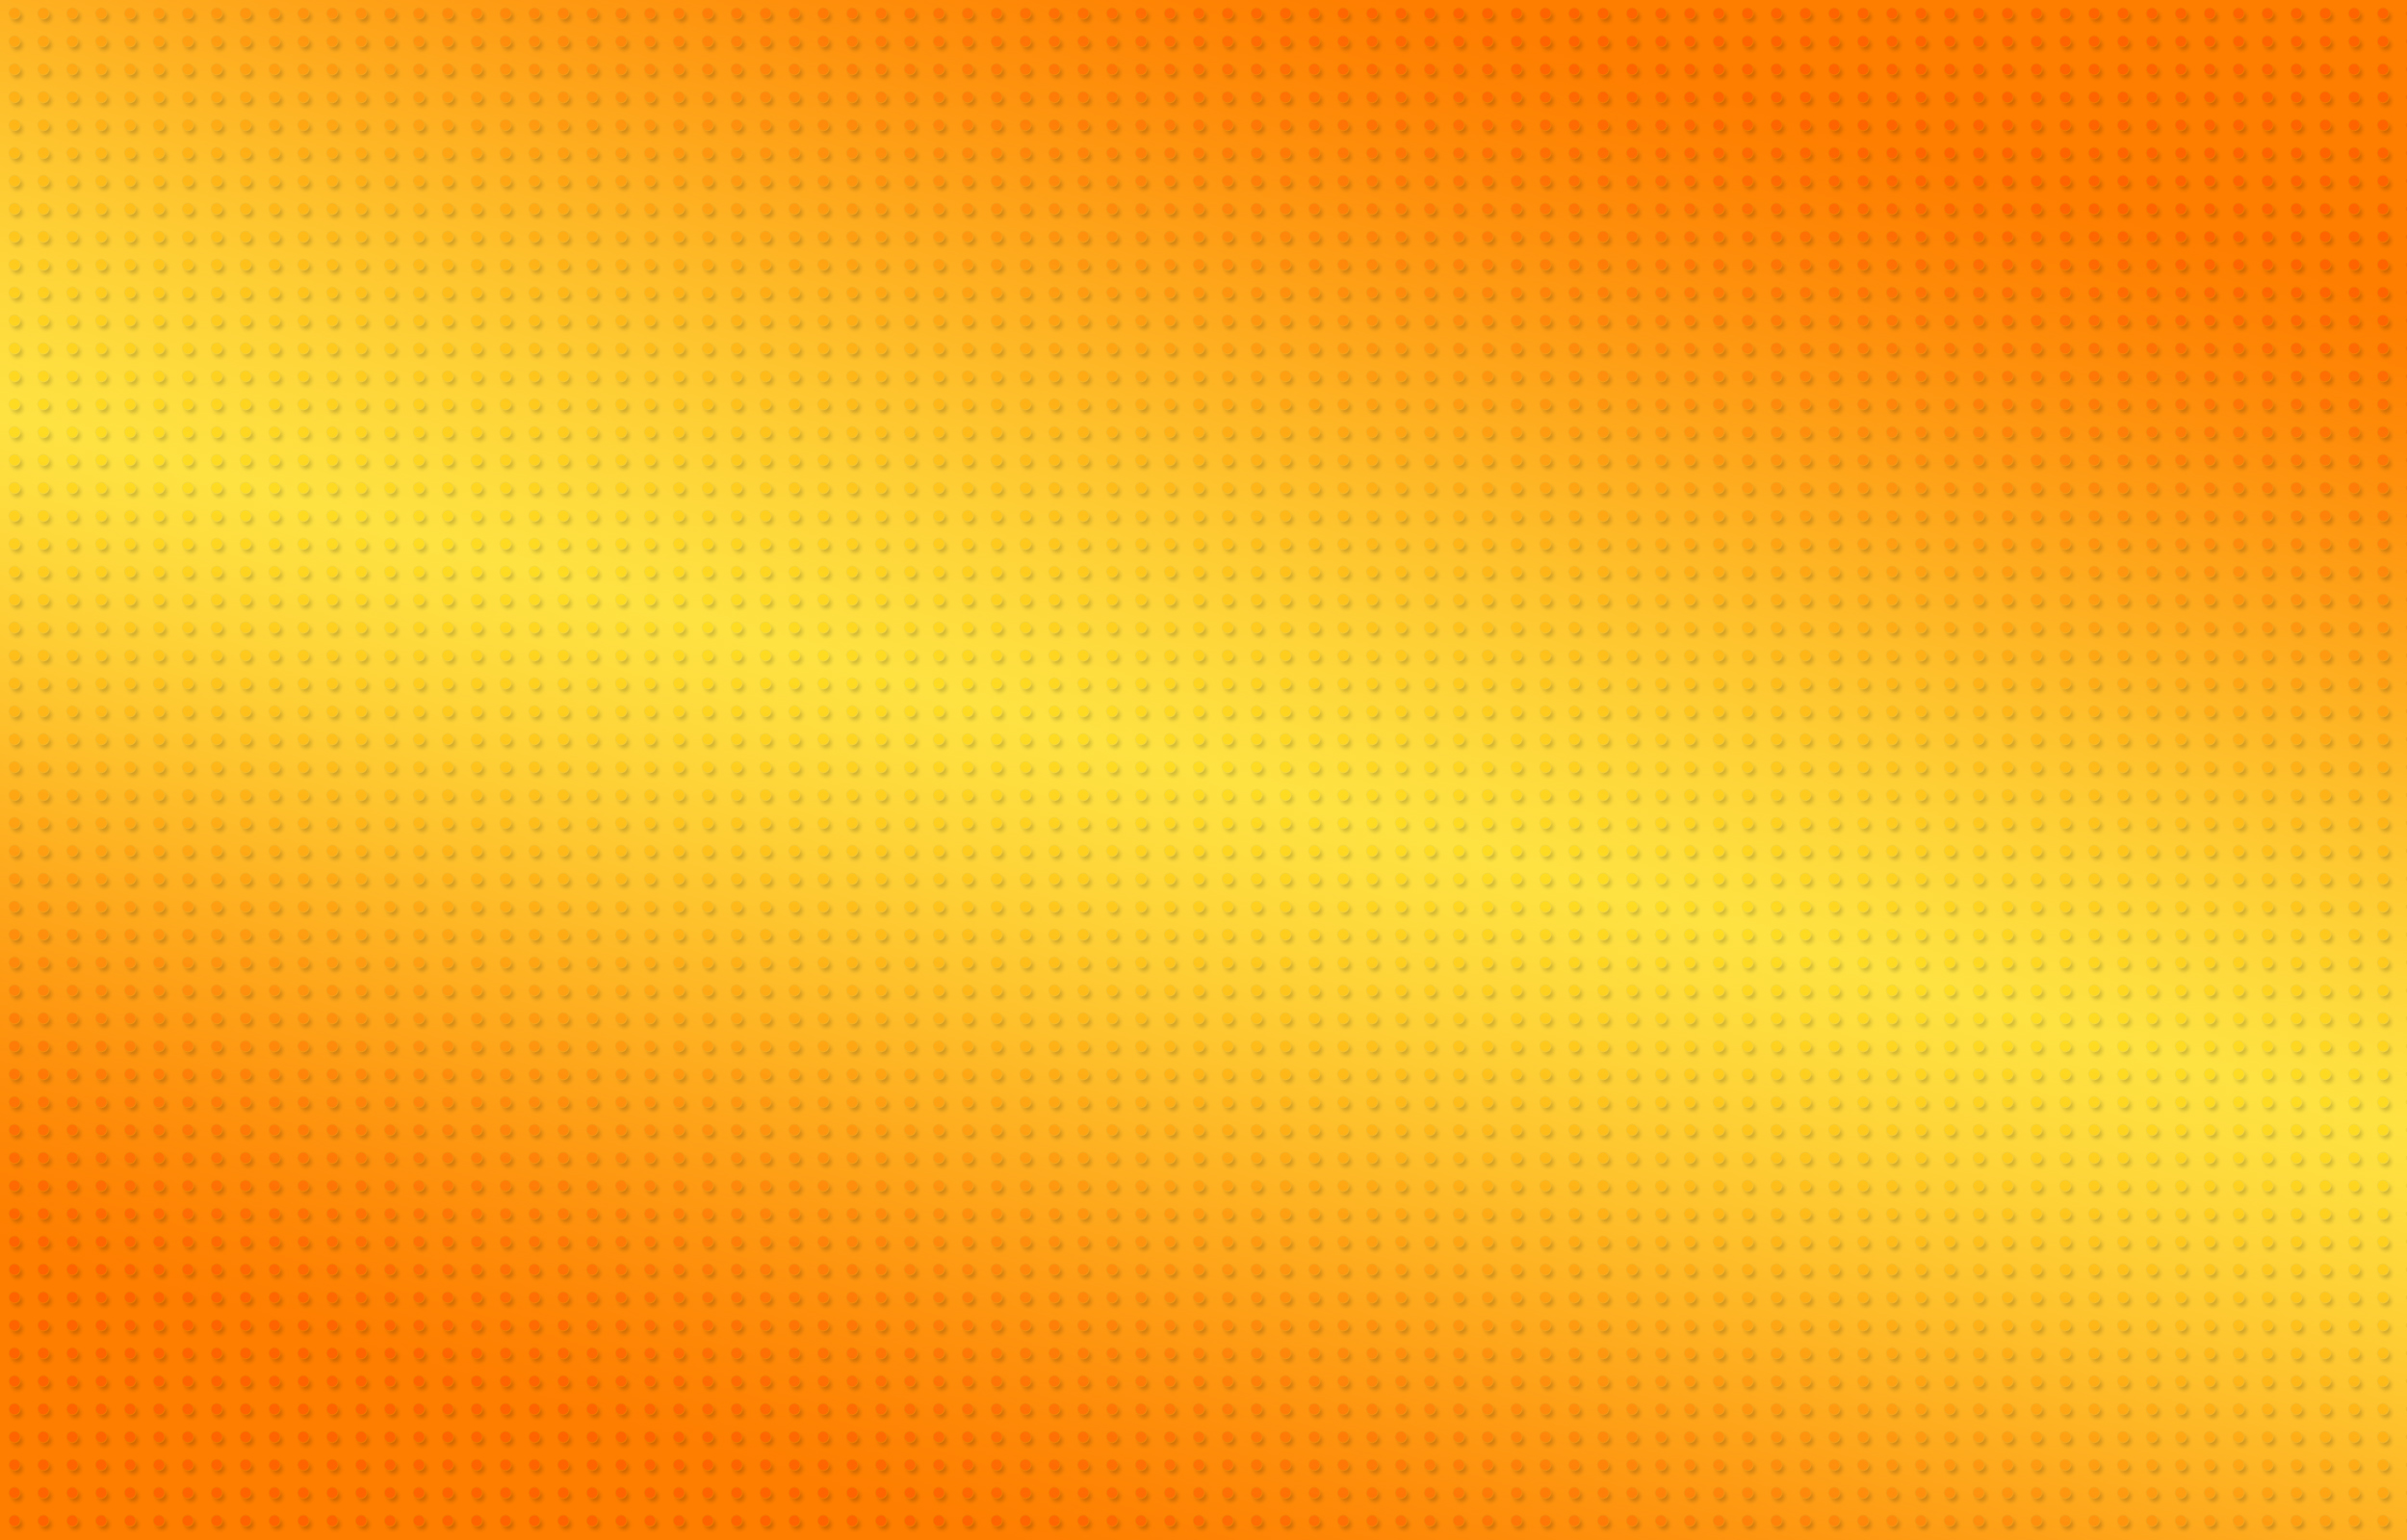 Để tôn lên vẻ đẹp của màu sắc cam, Orange của NickoLass sẽ đem đến cho bạn những trải nghiệm tuyệt vời trên màn hình của bạn. Được thiết kế với độ sắc nét tuyệt đối, các hình nền này sẽ làm giảm căng thẳng và mang lại niềm vui cho bạn.